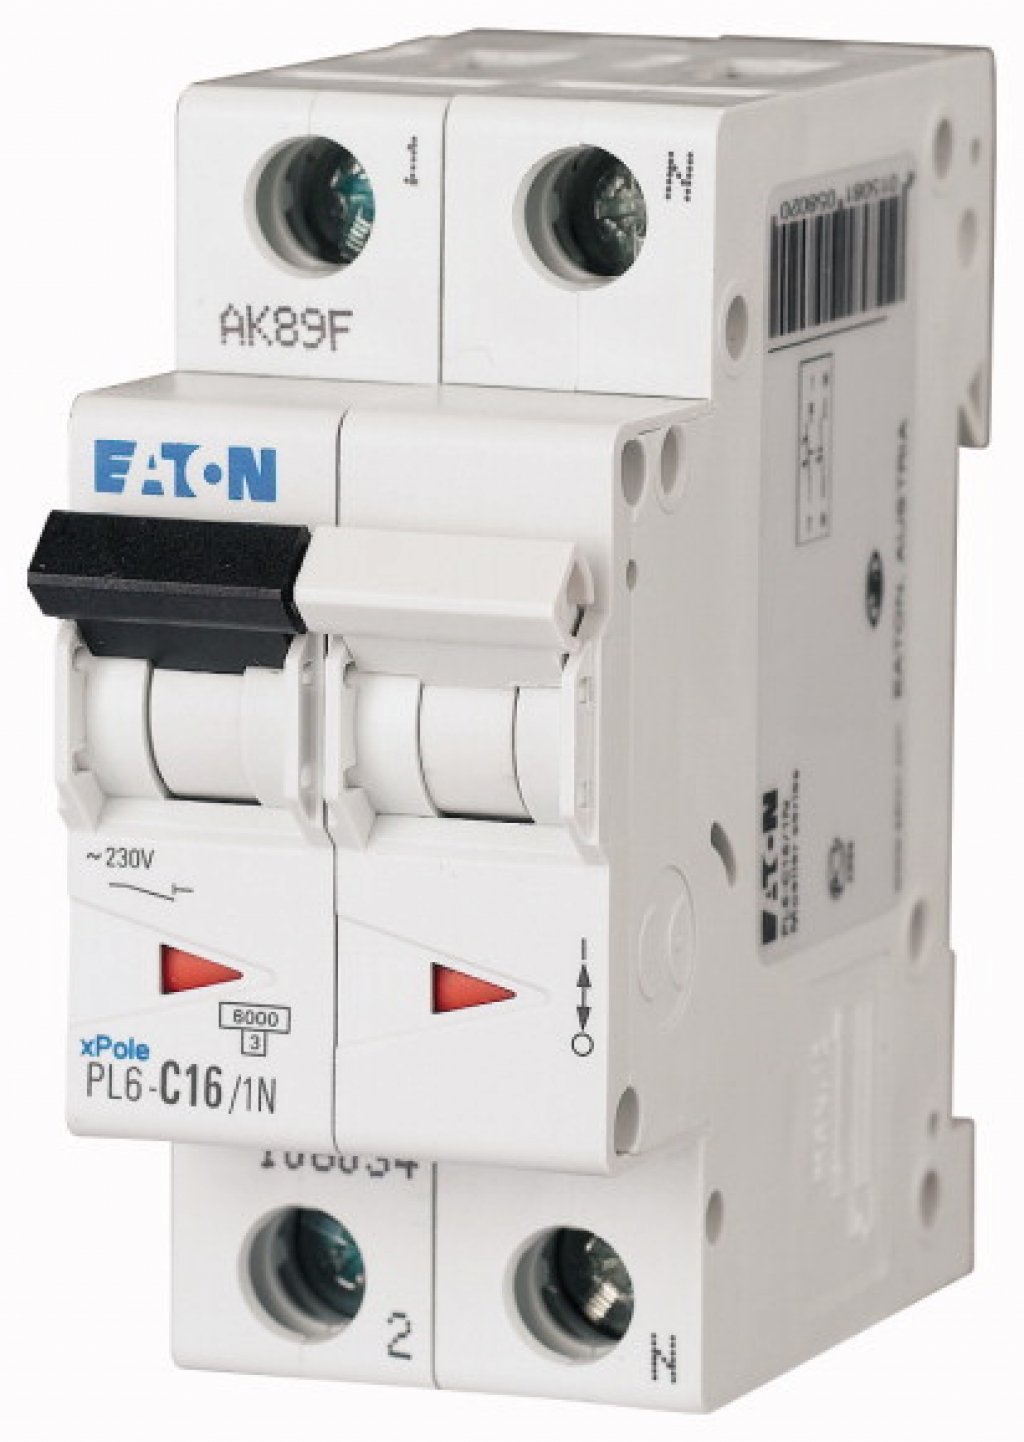 Автоматический выключатель 3p 50а. Eaton Xpole автоматический выключатель. Eaton pl6-c25/3. Eaton pl6-c20/4. Pl4-c20/1 автоматический выключатель 20а 1 полюс.